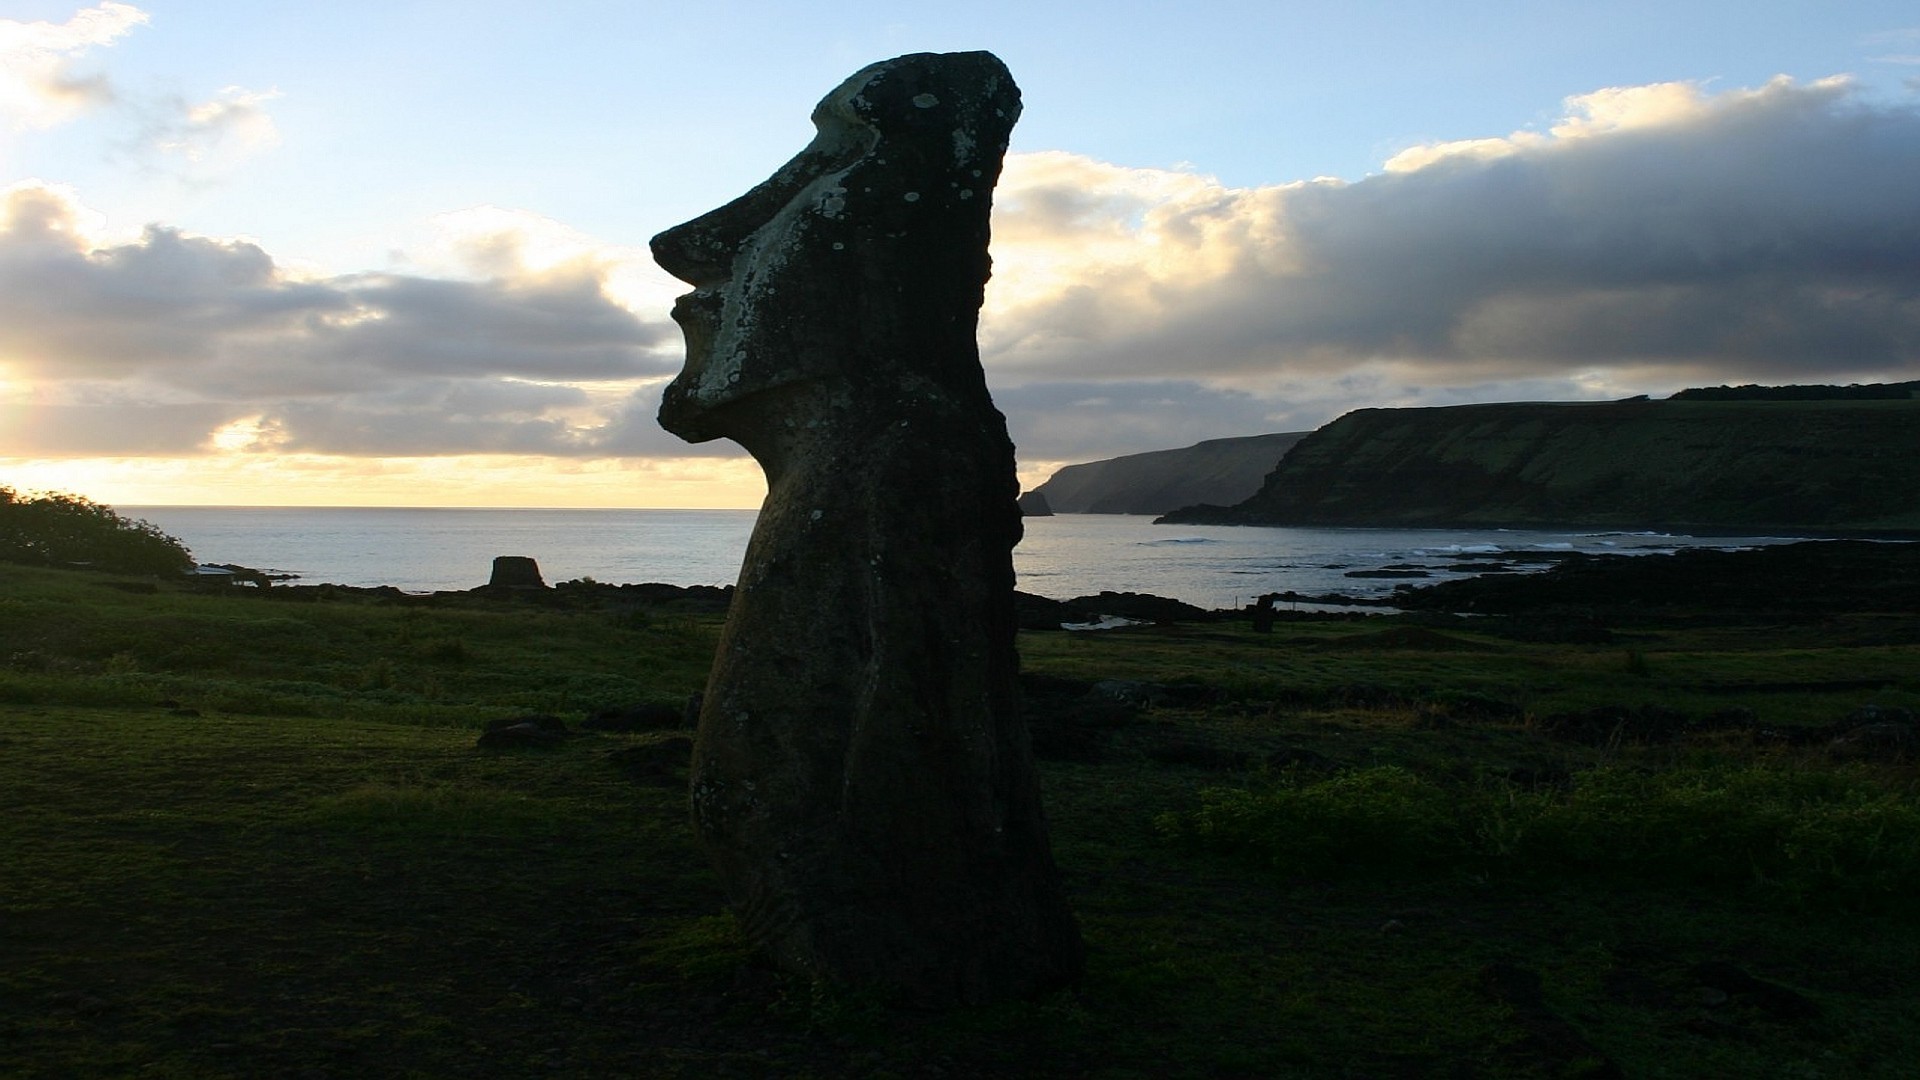 Moai Statues On Easter Island Wallpaper